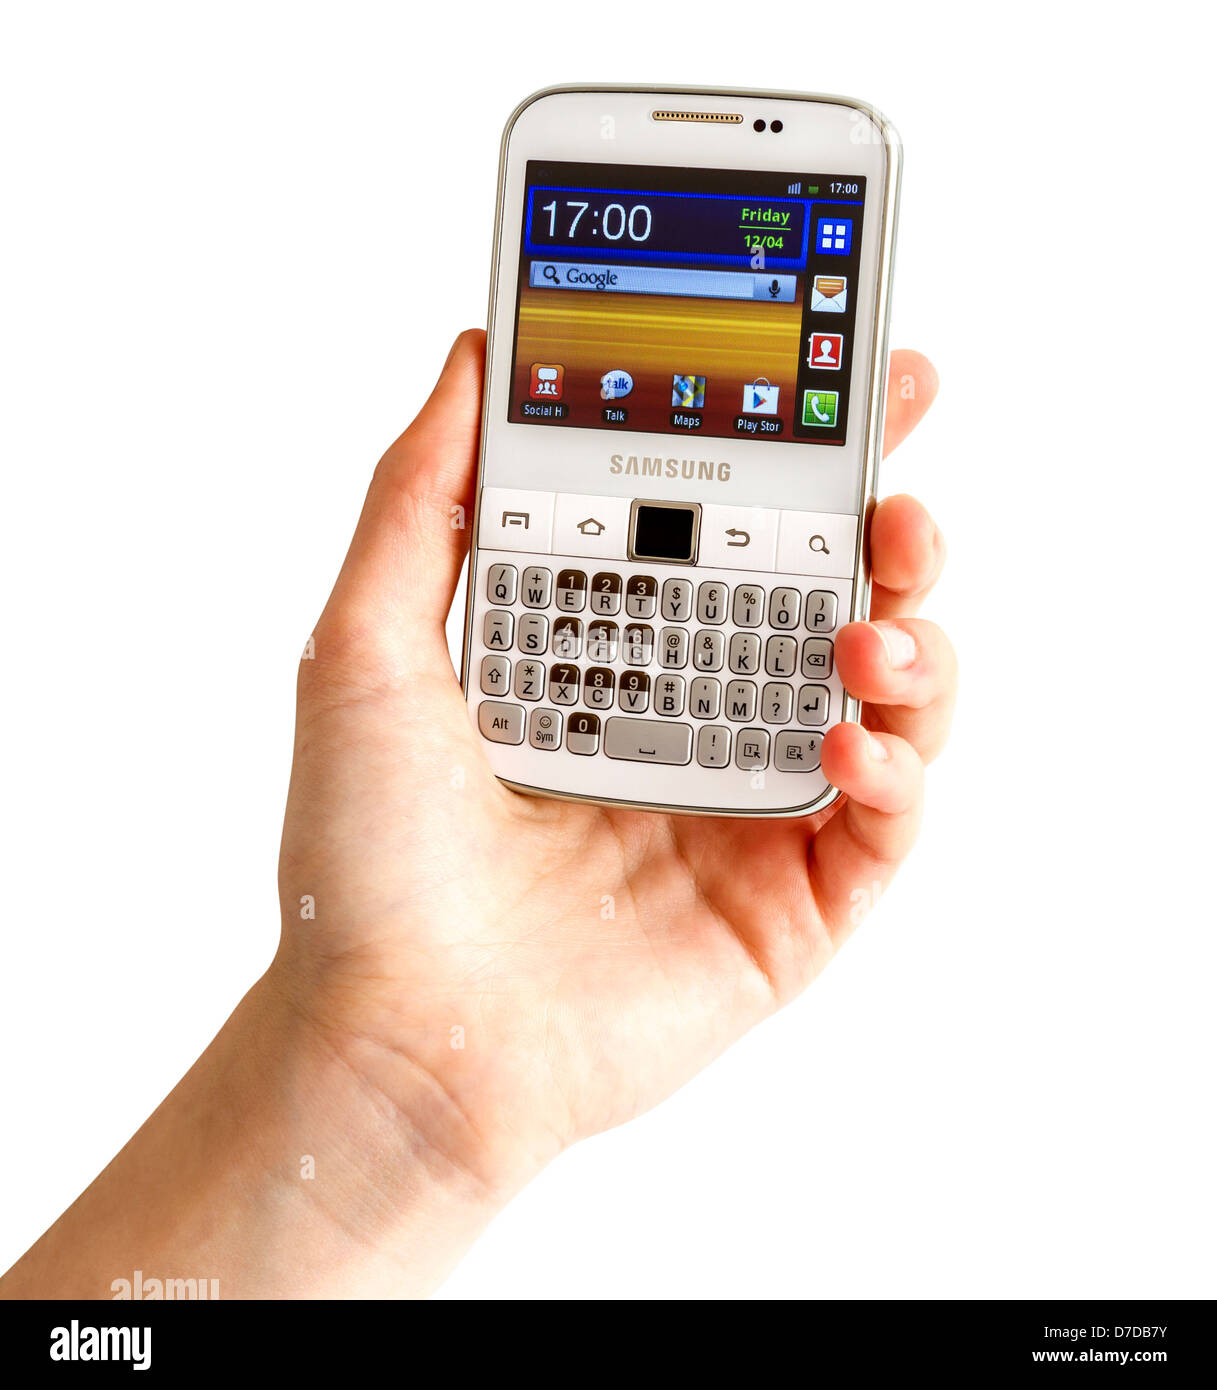 Samsung Galaxy Y Pro B5510 ist ein Android Smartphone mit QWERTZ-Tastatur Candybar. Stockfoto